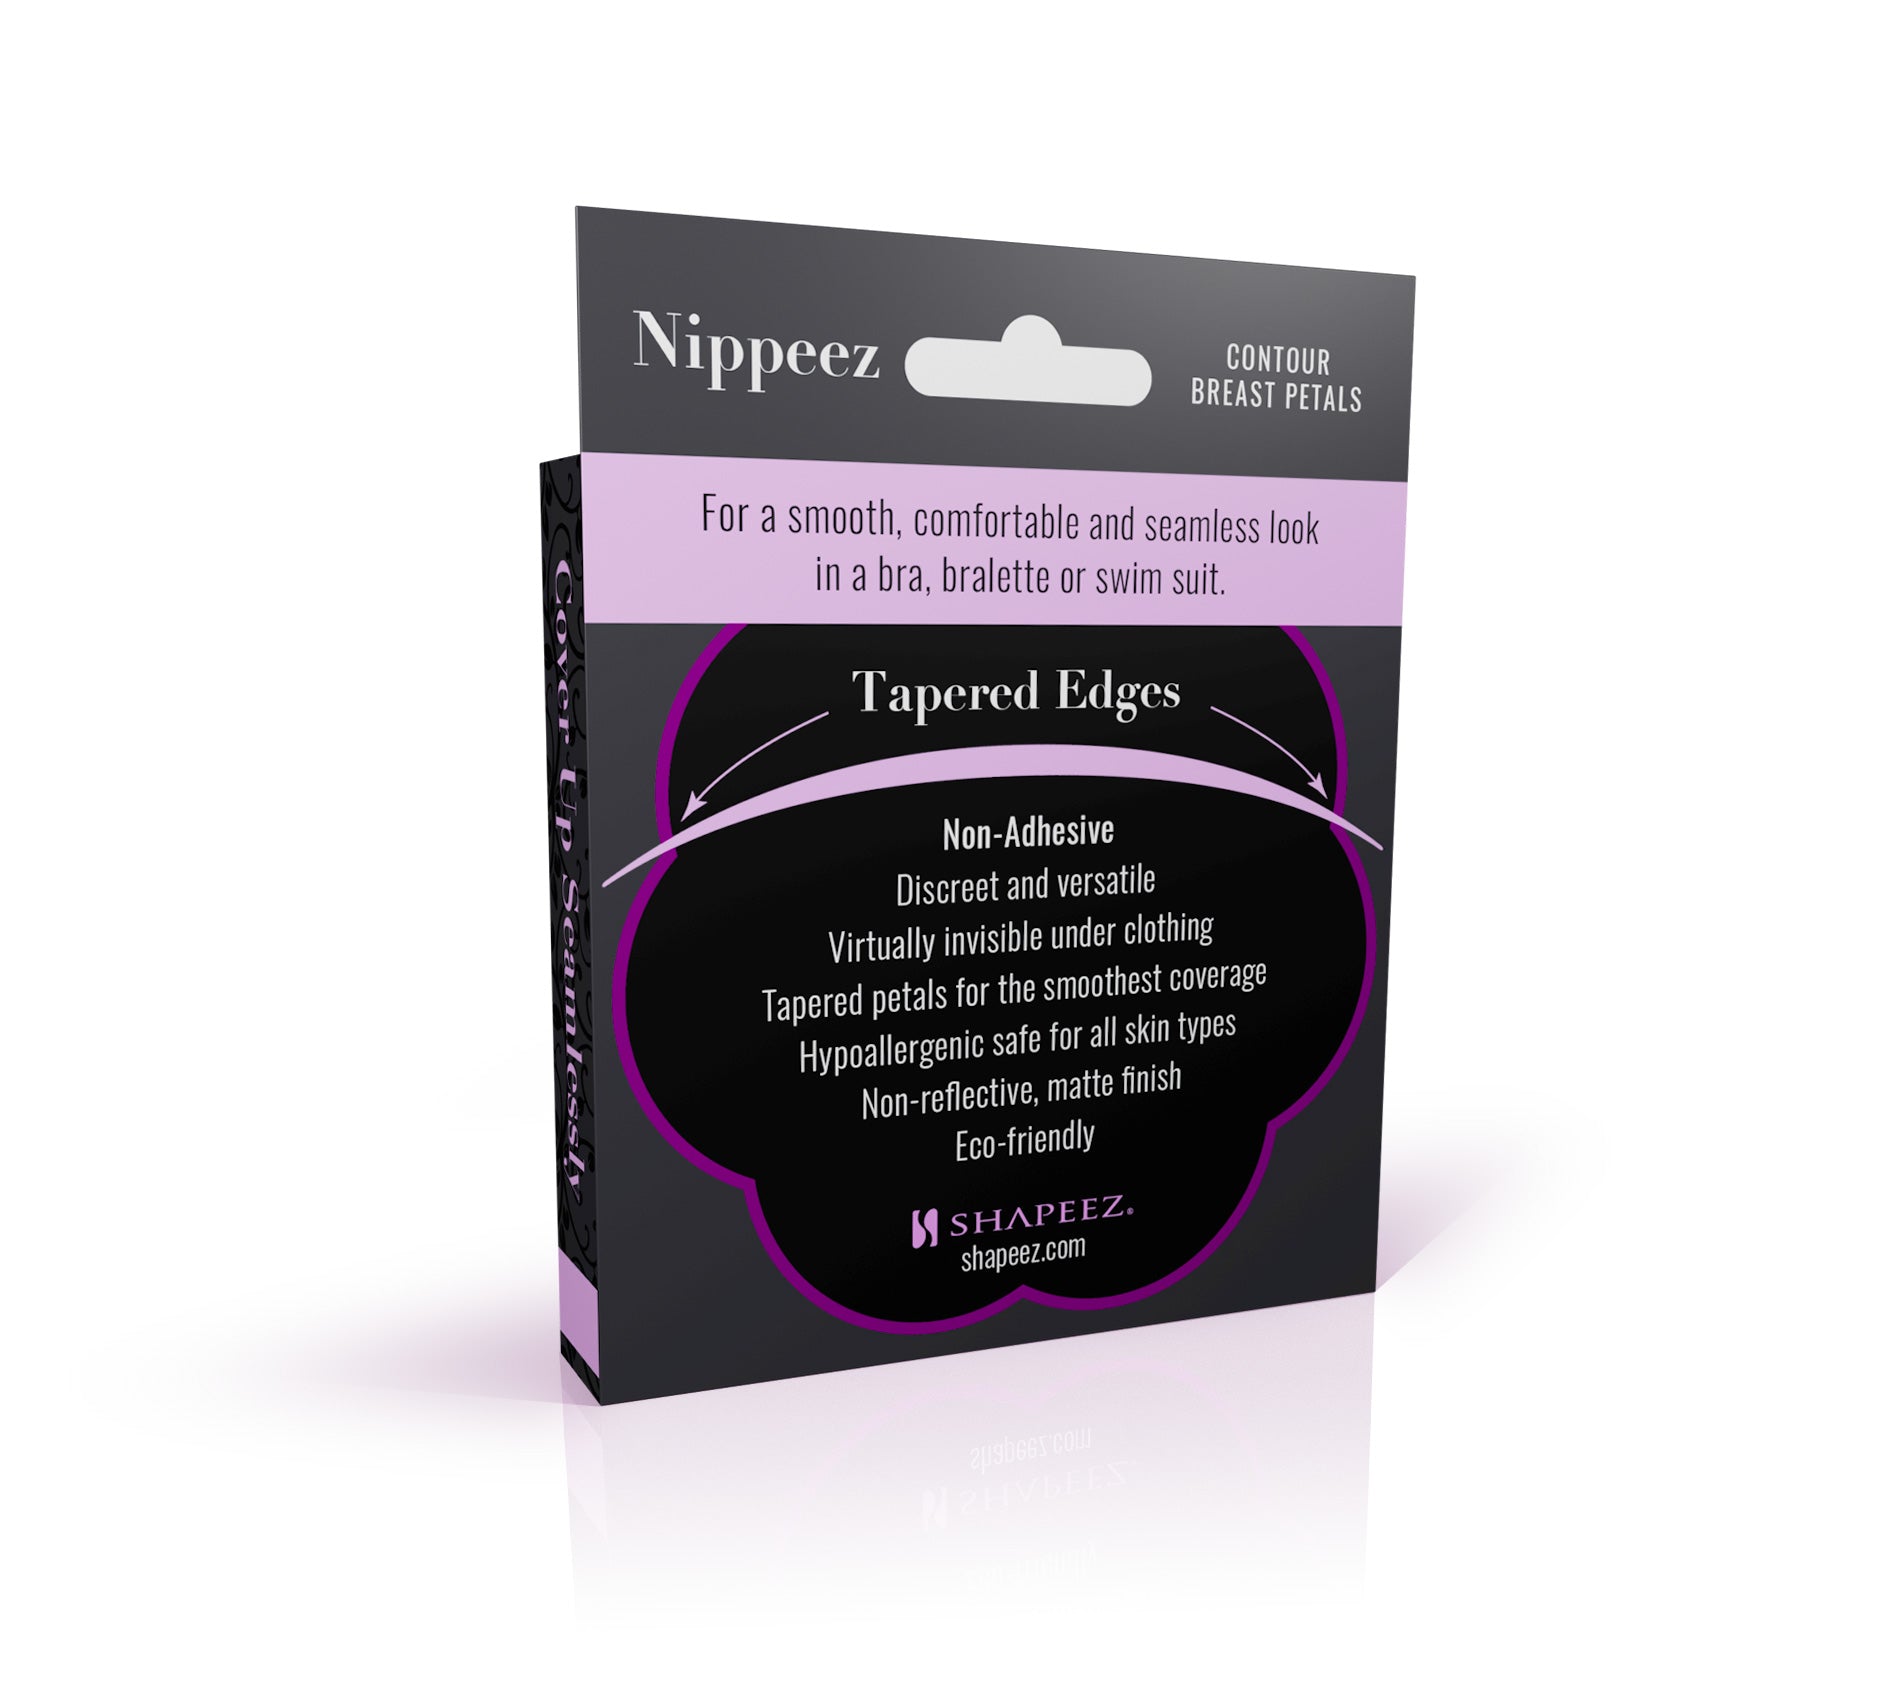 Nippeez - Contour Breast Petals